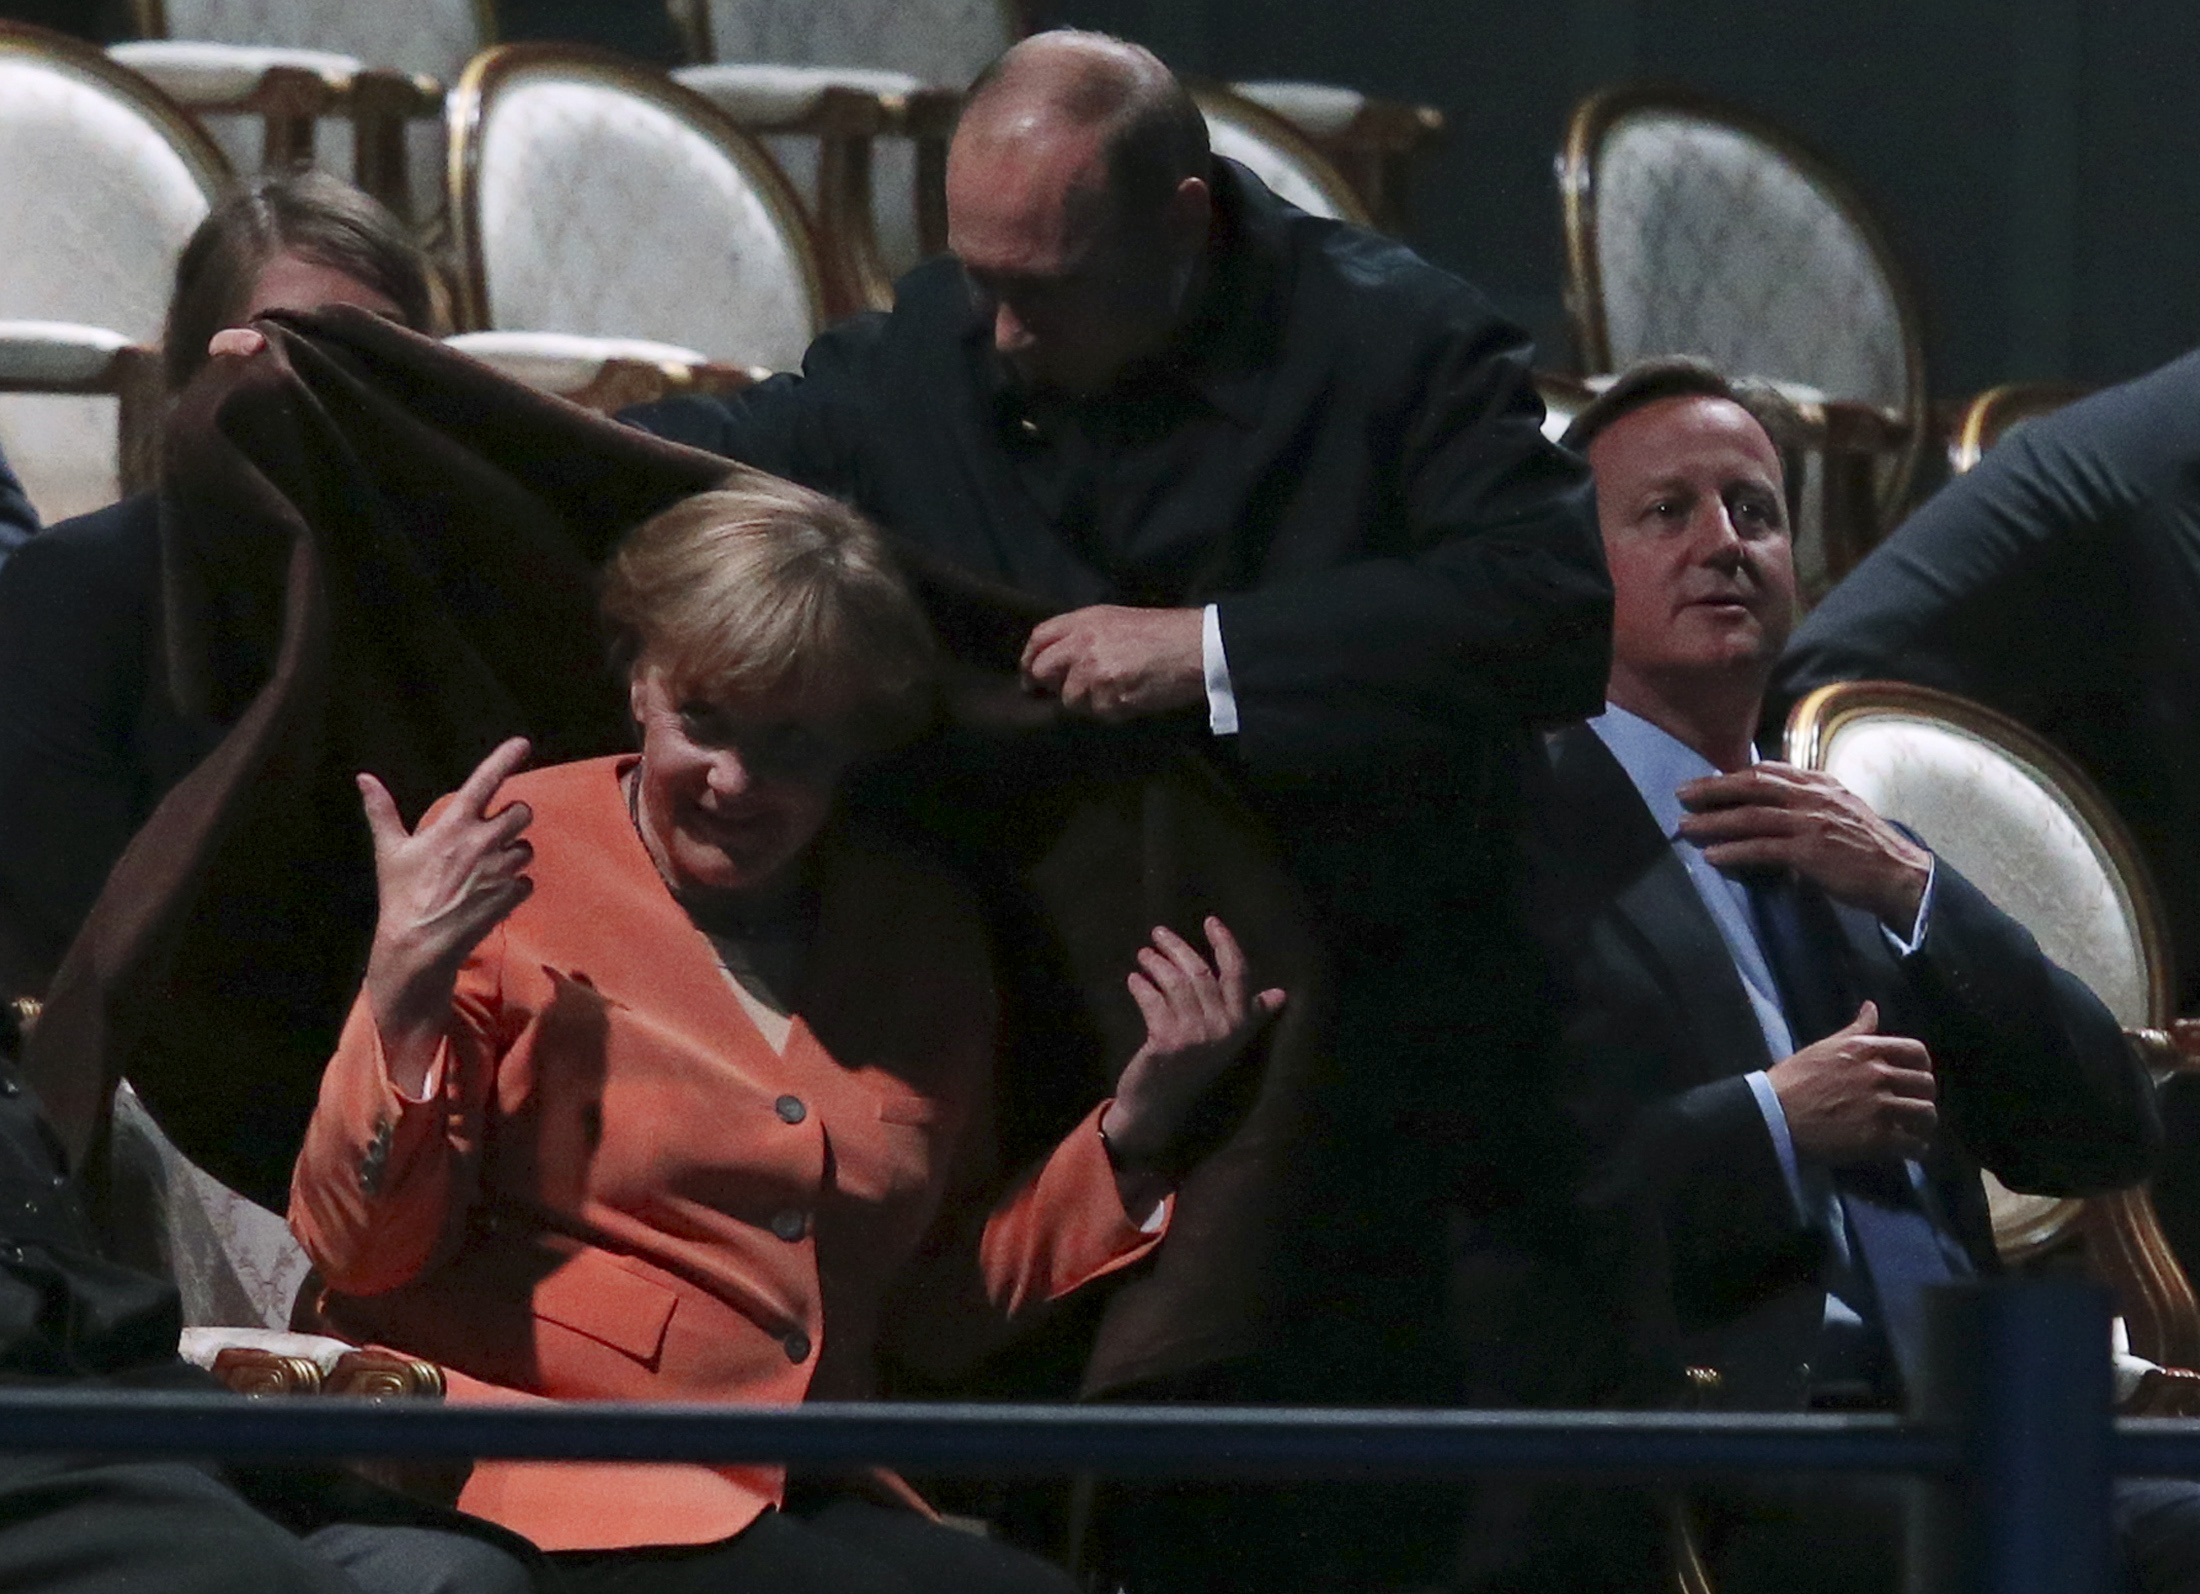 2013年9月サンクトペテルブルク20ヶ国・地域（G20）首脳会議で、プーチン大統領がドイツのアンゲラ・メルケル首相の肩に毛布をかける。この時はそれほど話題にならなかった。